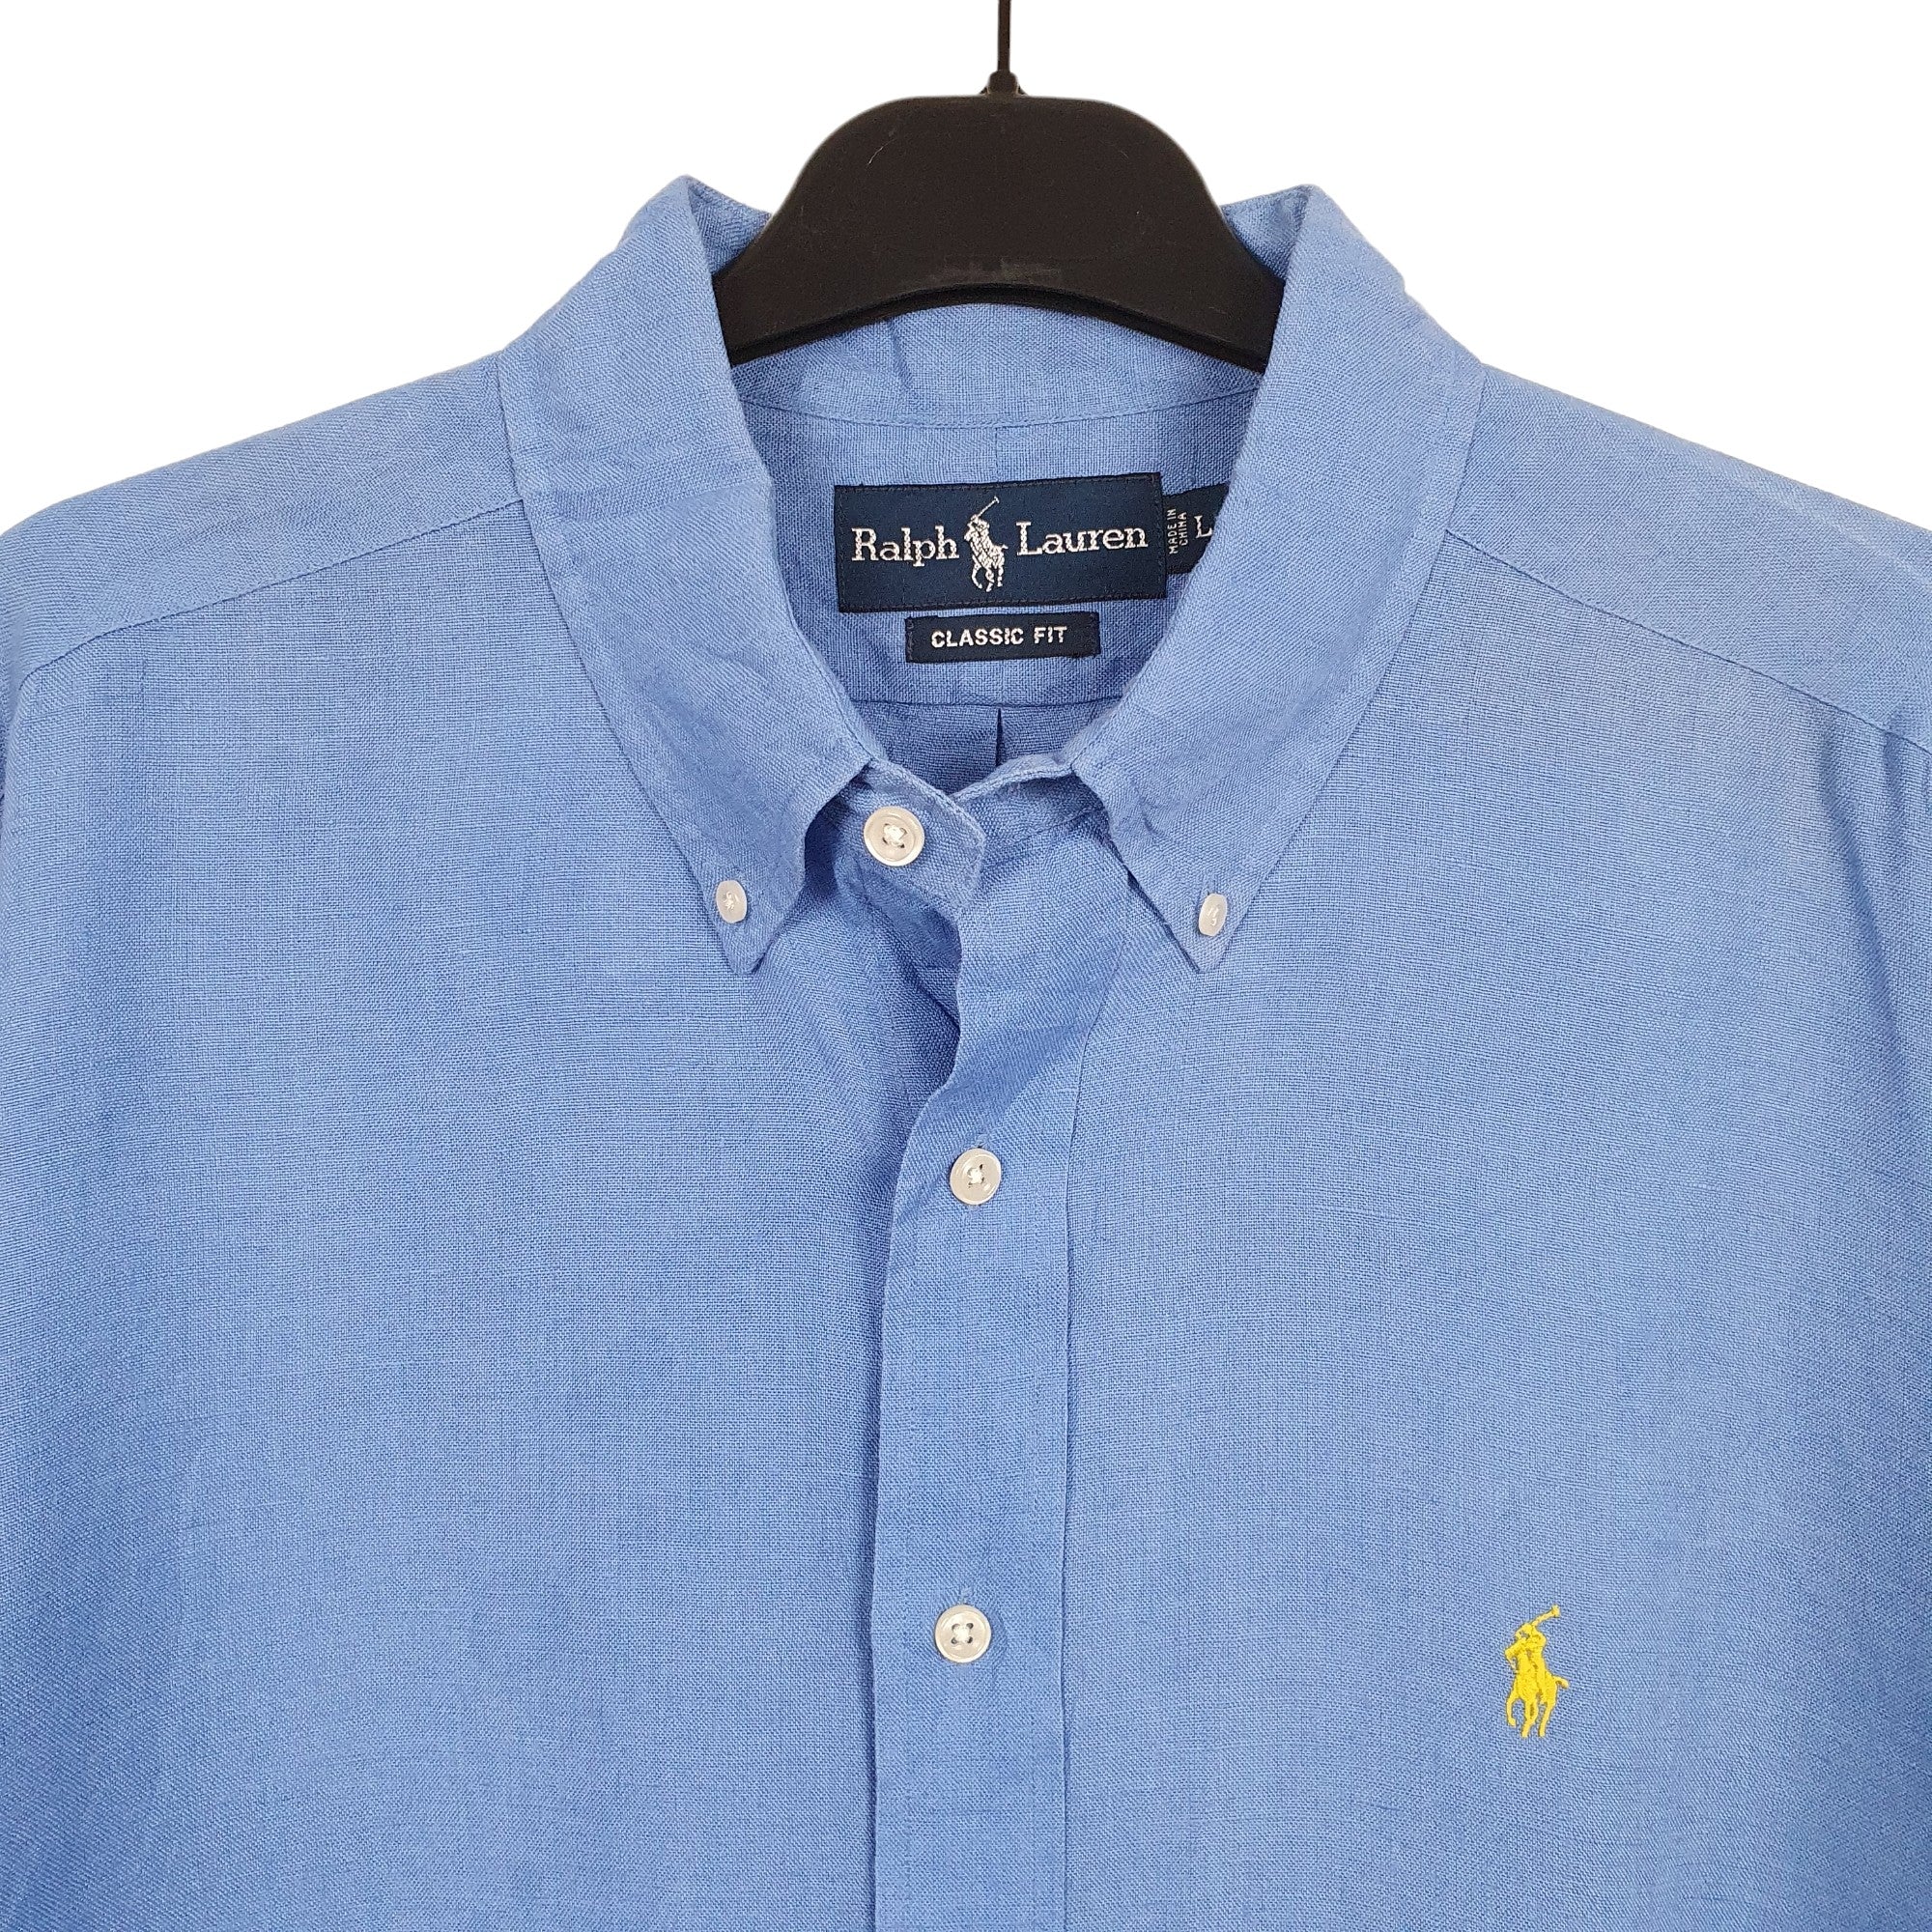 Ralph Lauren Linen Shirts | Bundl Clothing | Free Returns